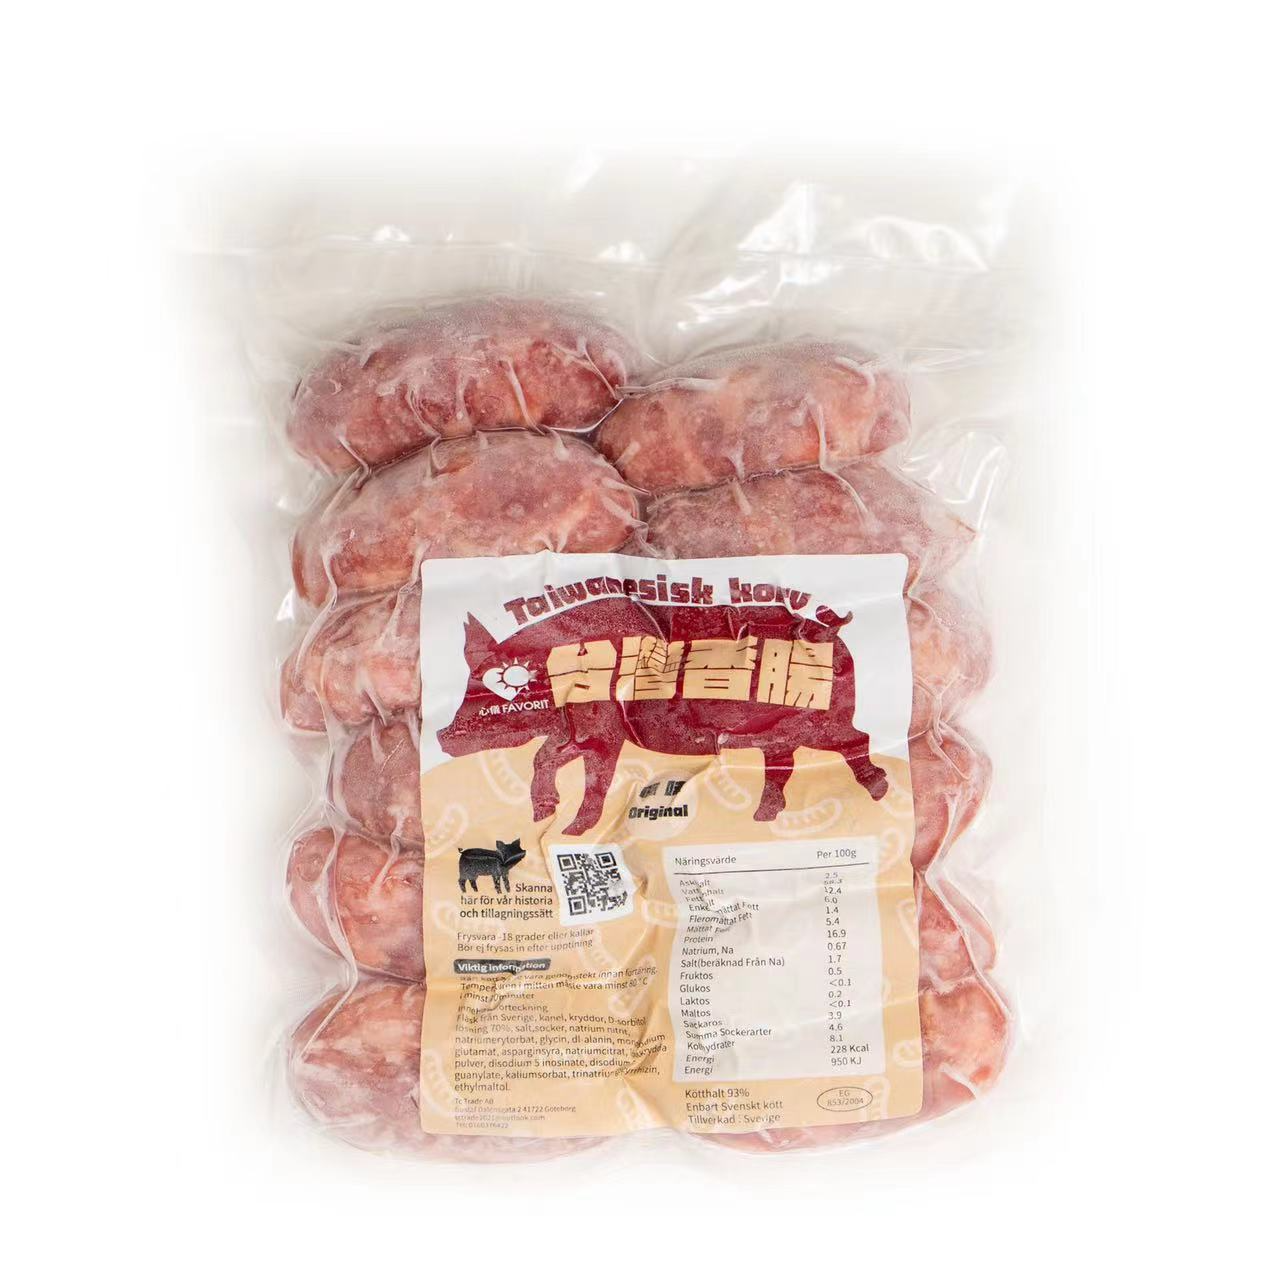 台湾香肠/香腸 原味 使用瑞典猪肉为内馅 冷冻  约500g Tc 瑞典 - 强推荐!